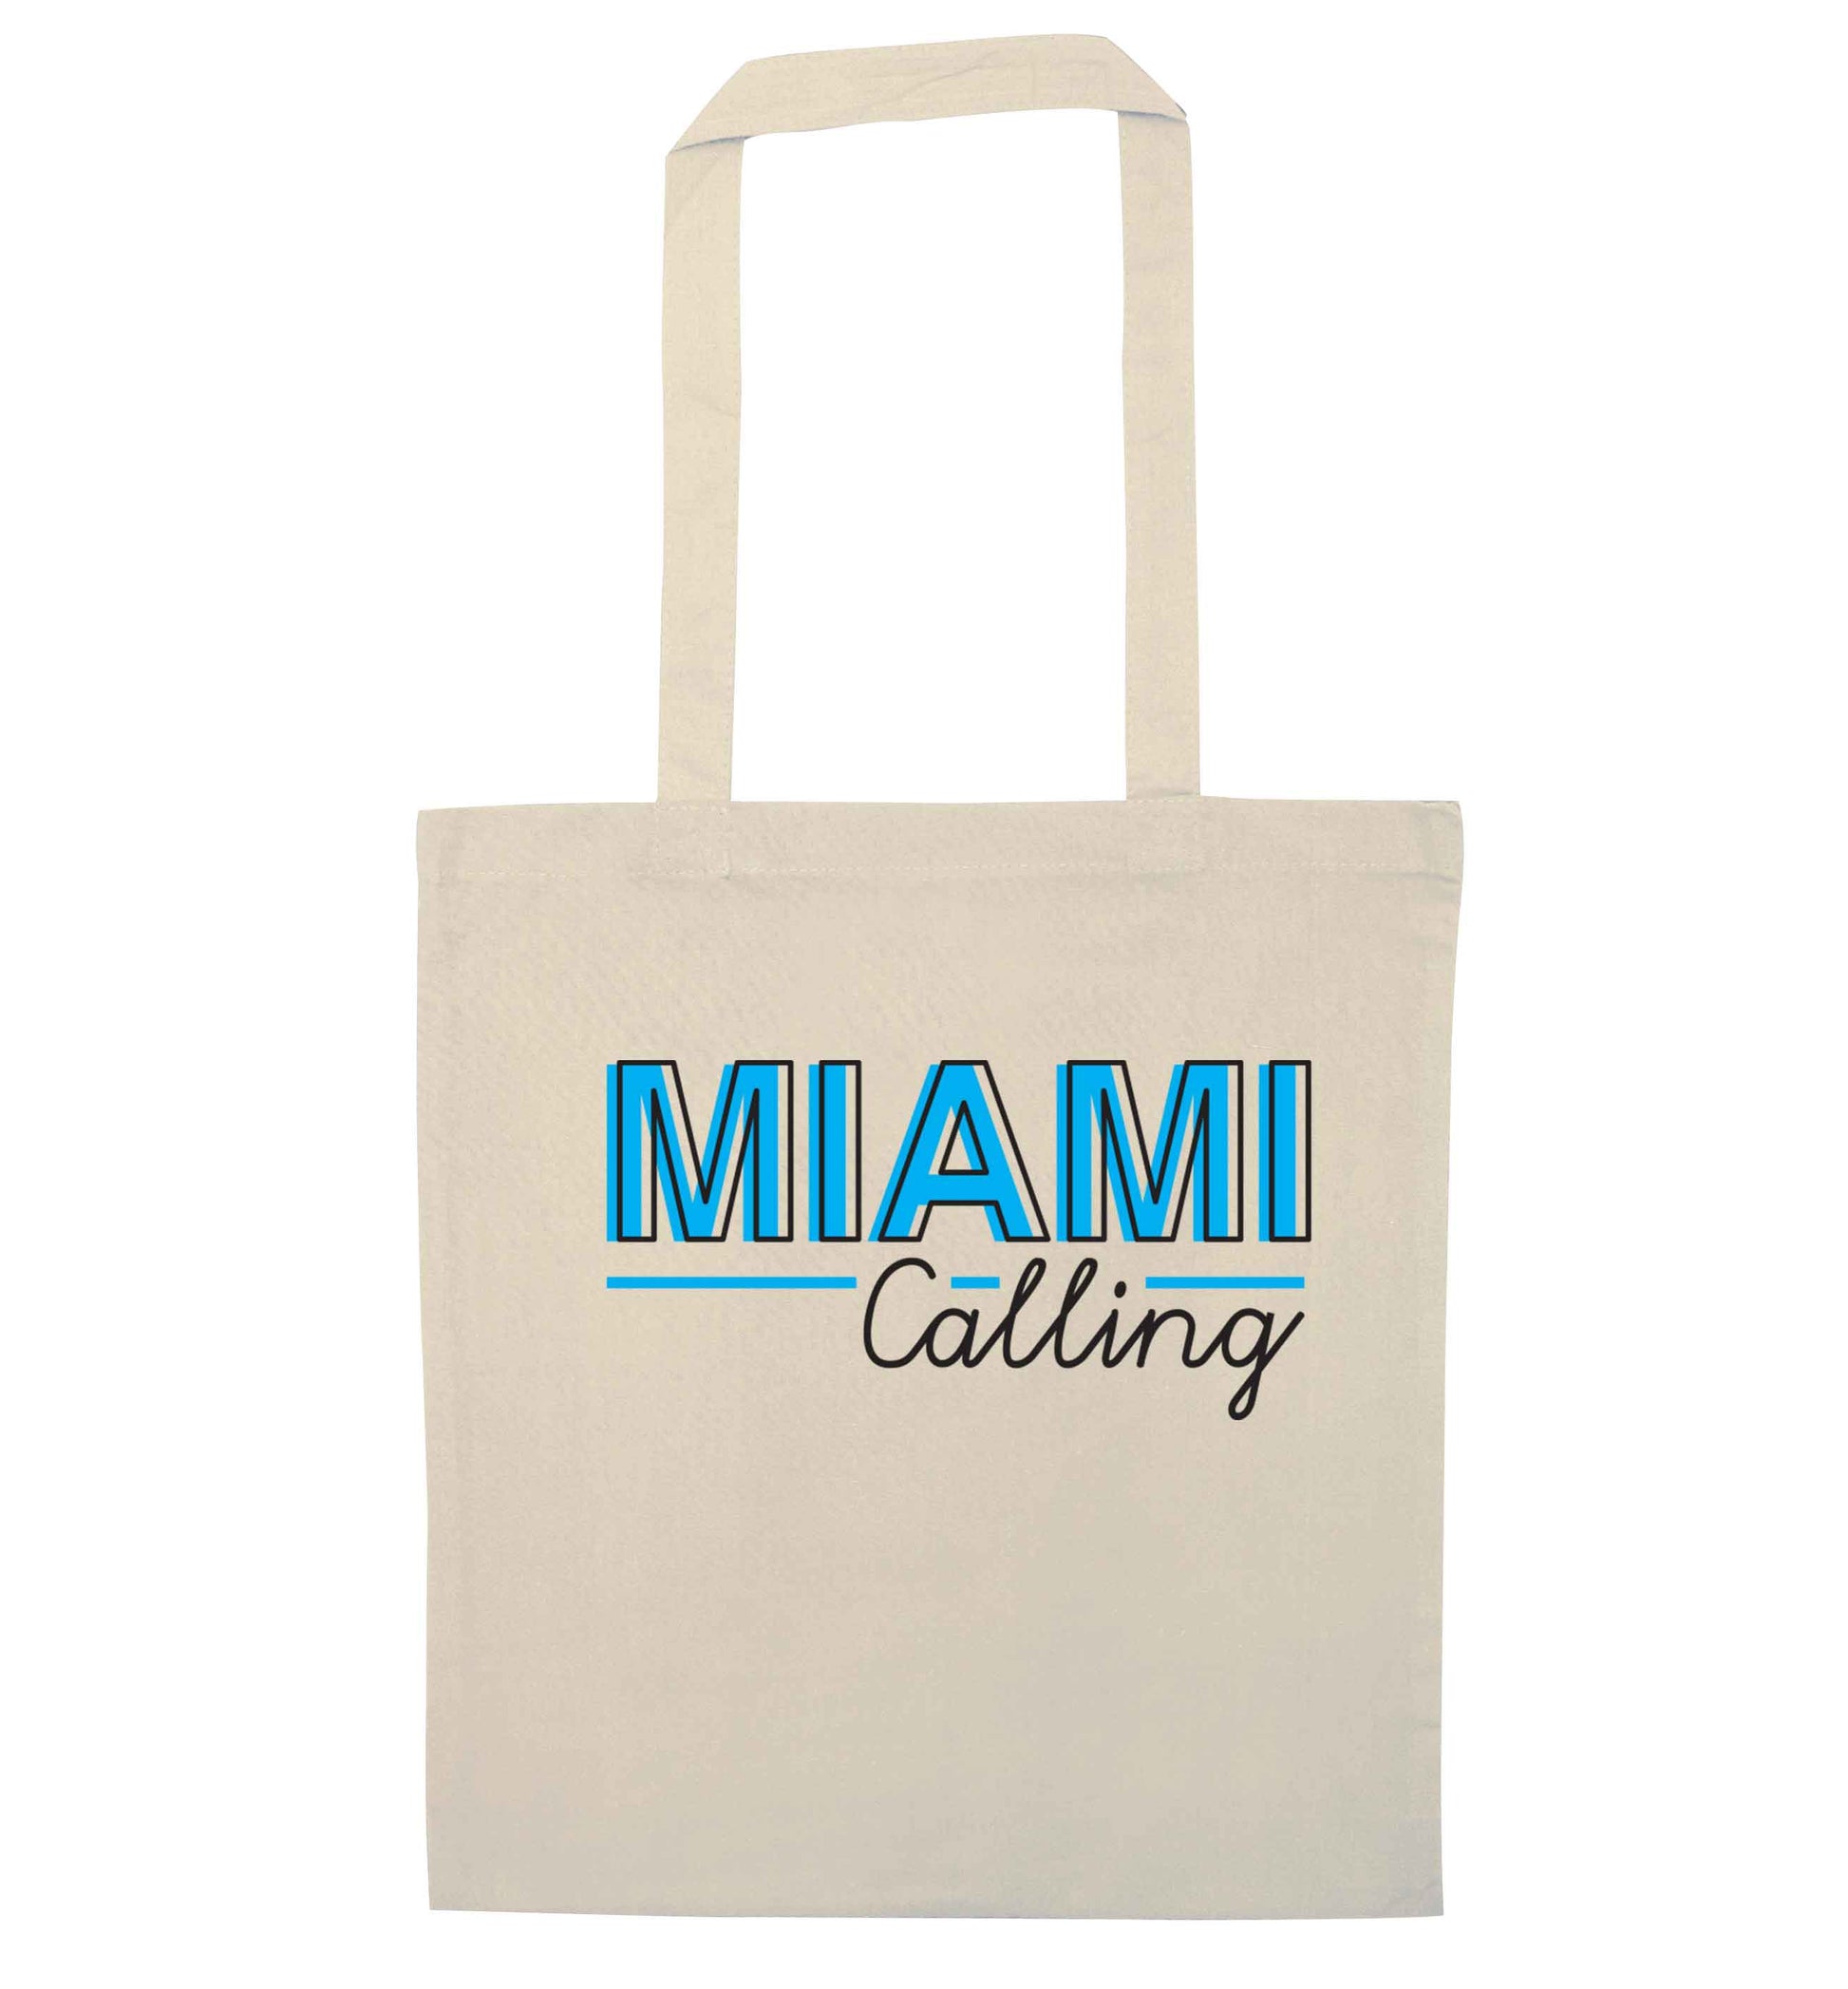 Miami calling natural tote bag